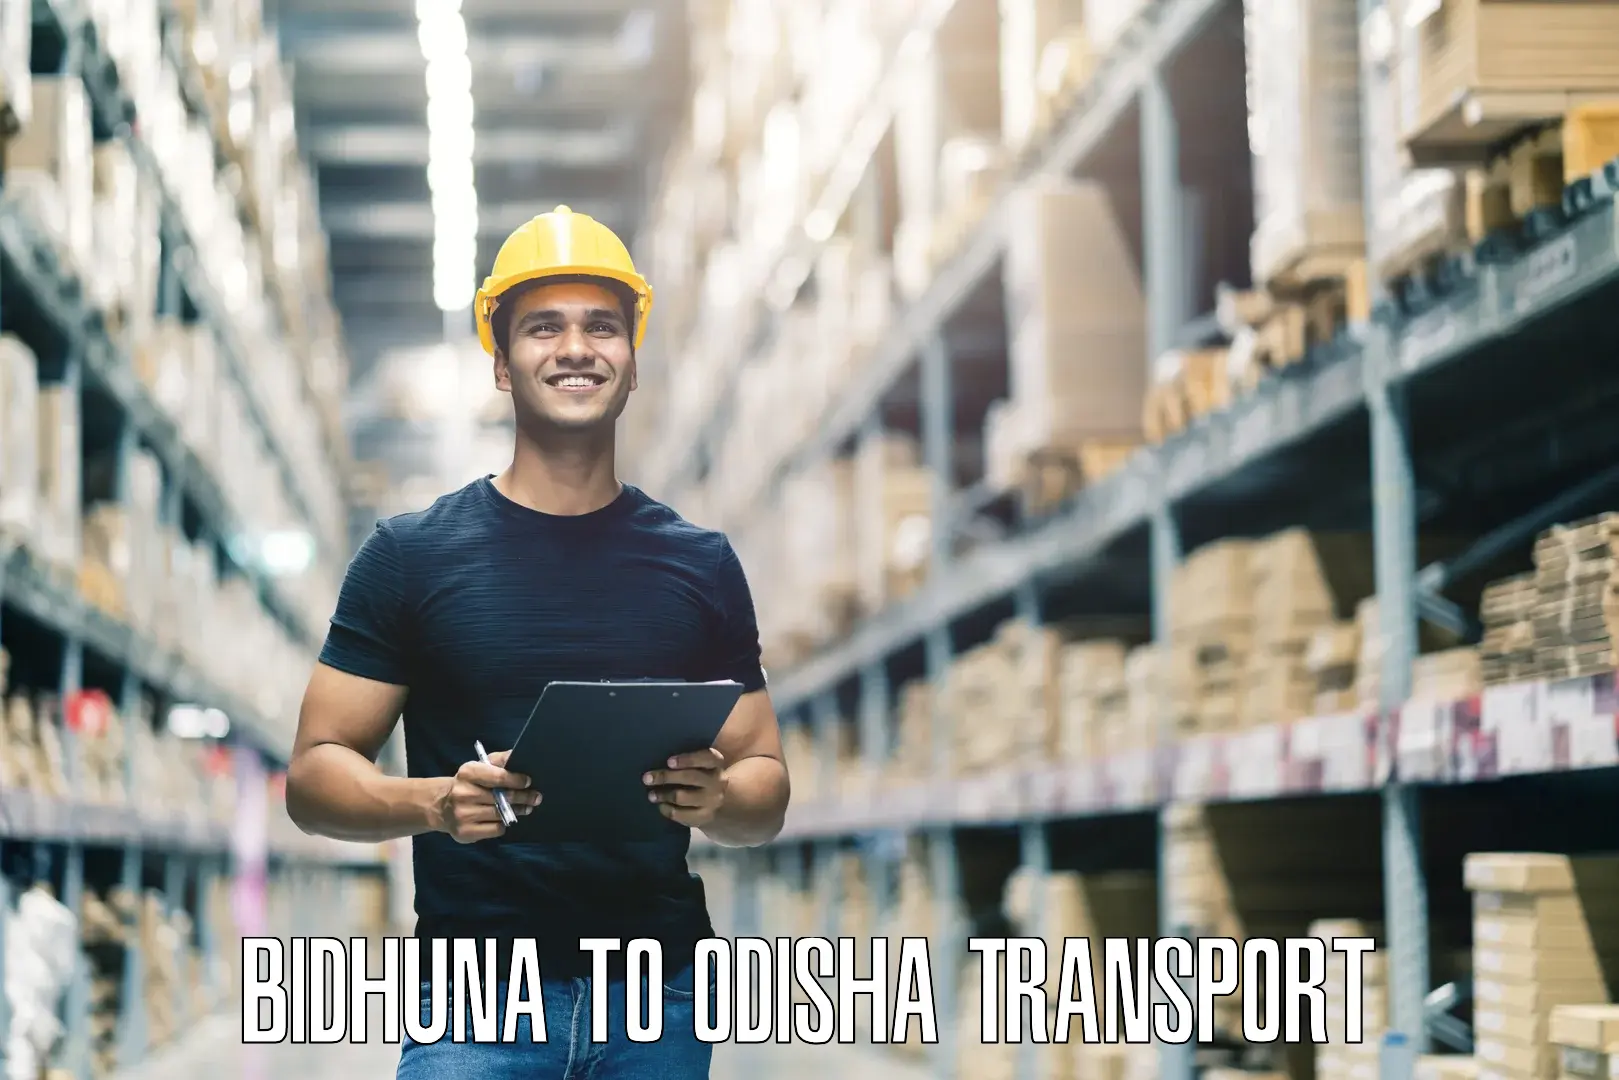 Nearest transport service Bidhuna to Odisha